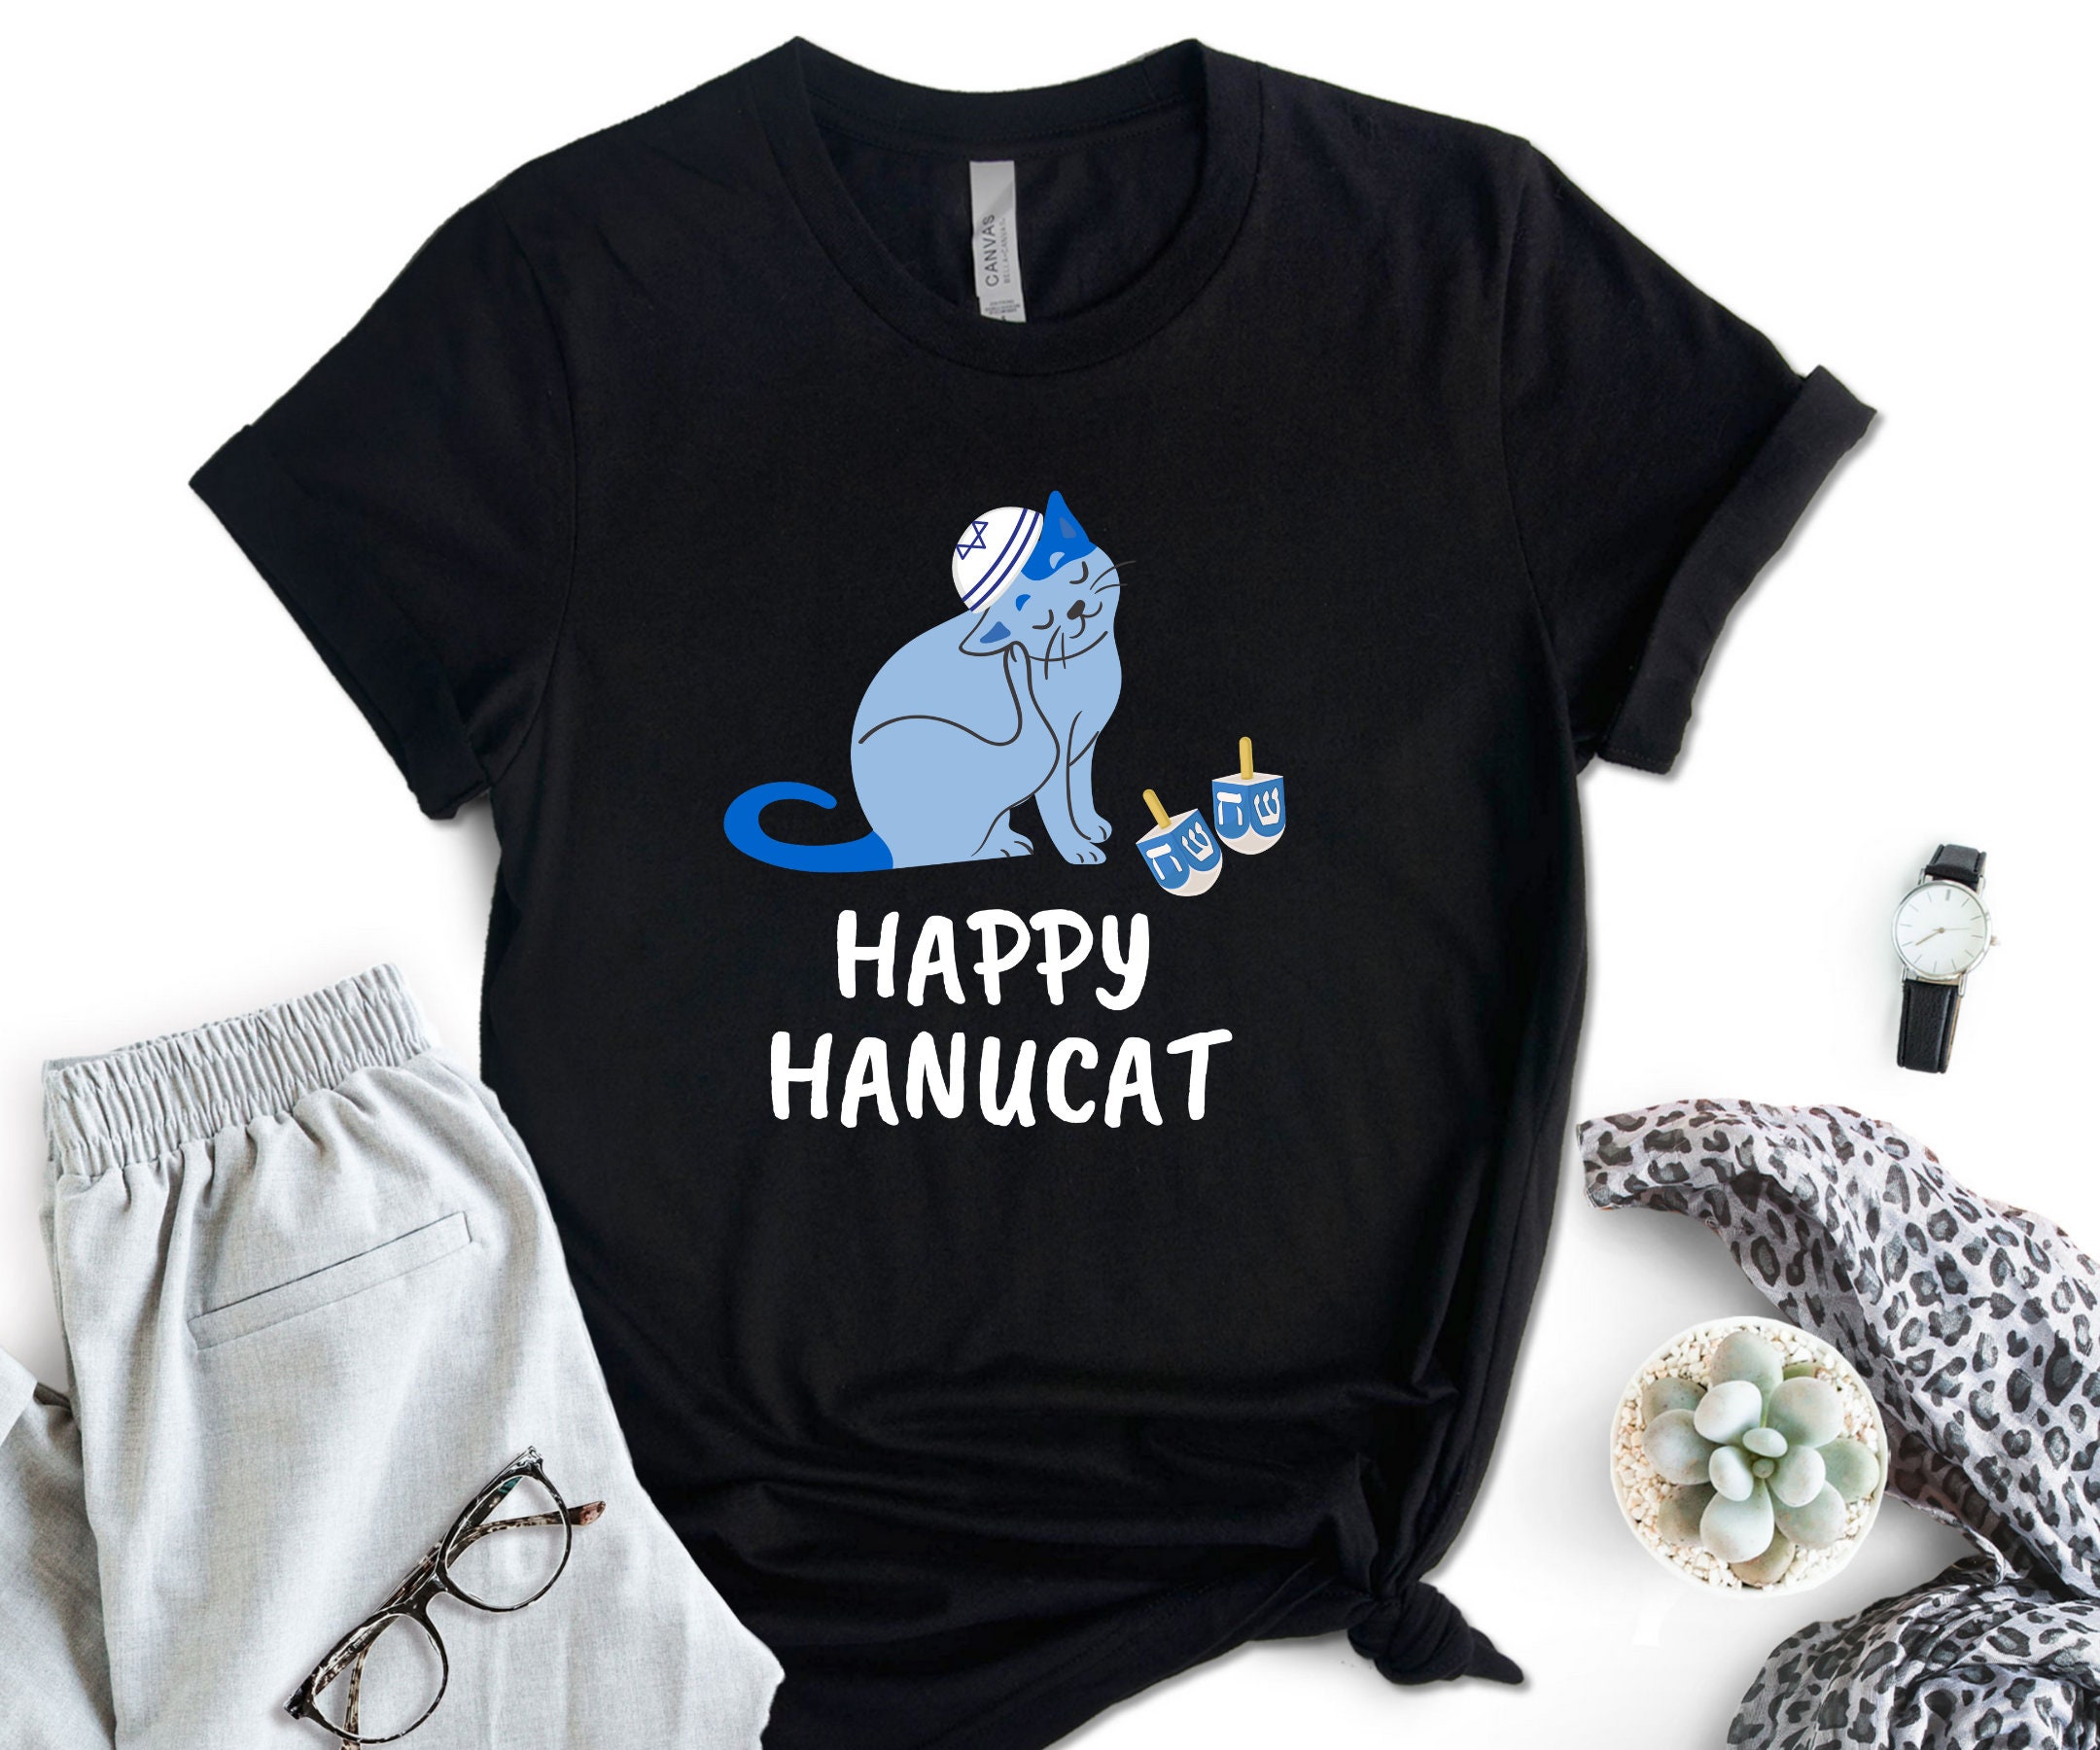 Discover Happy Hanucat Shirt, Hanukkah Shirt, Hanukkah Gift, Jewish Shirt, Jewish Gift,  Jewish T-shirt, Shalom Shirt, Funny Hanukkah Tees